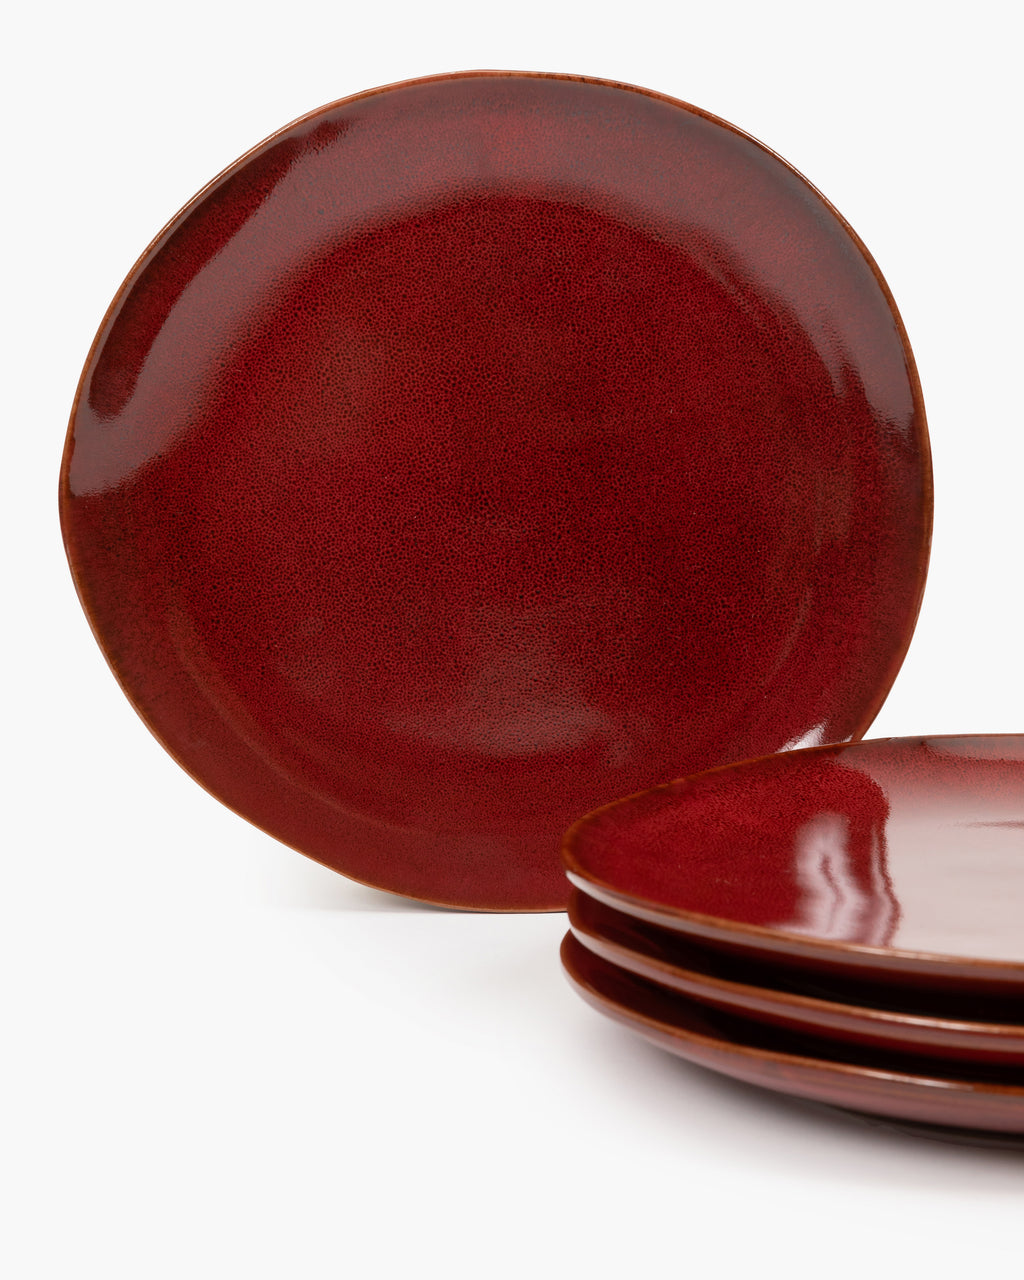 Full Set 24 pieces - La Mère tableware by Marie Michielssen - Venetian red